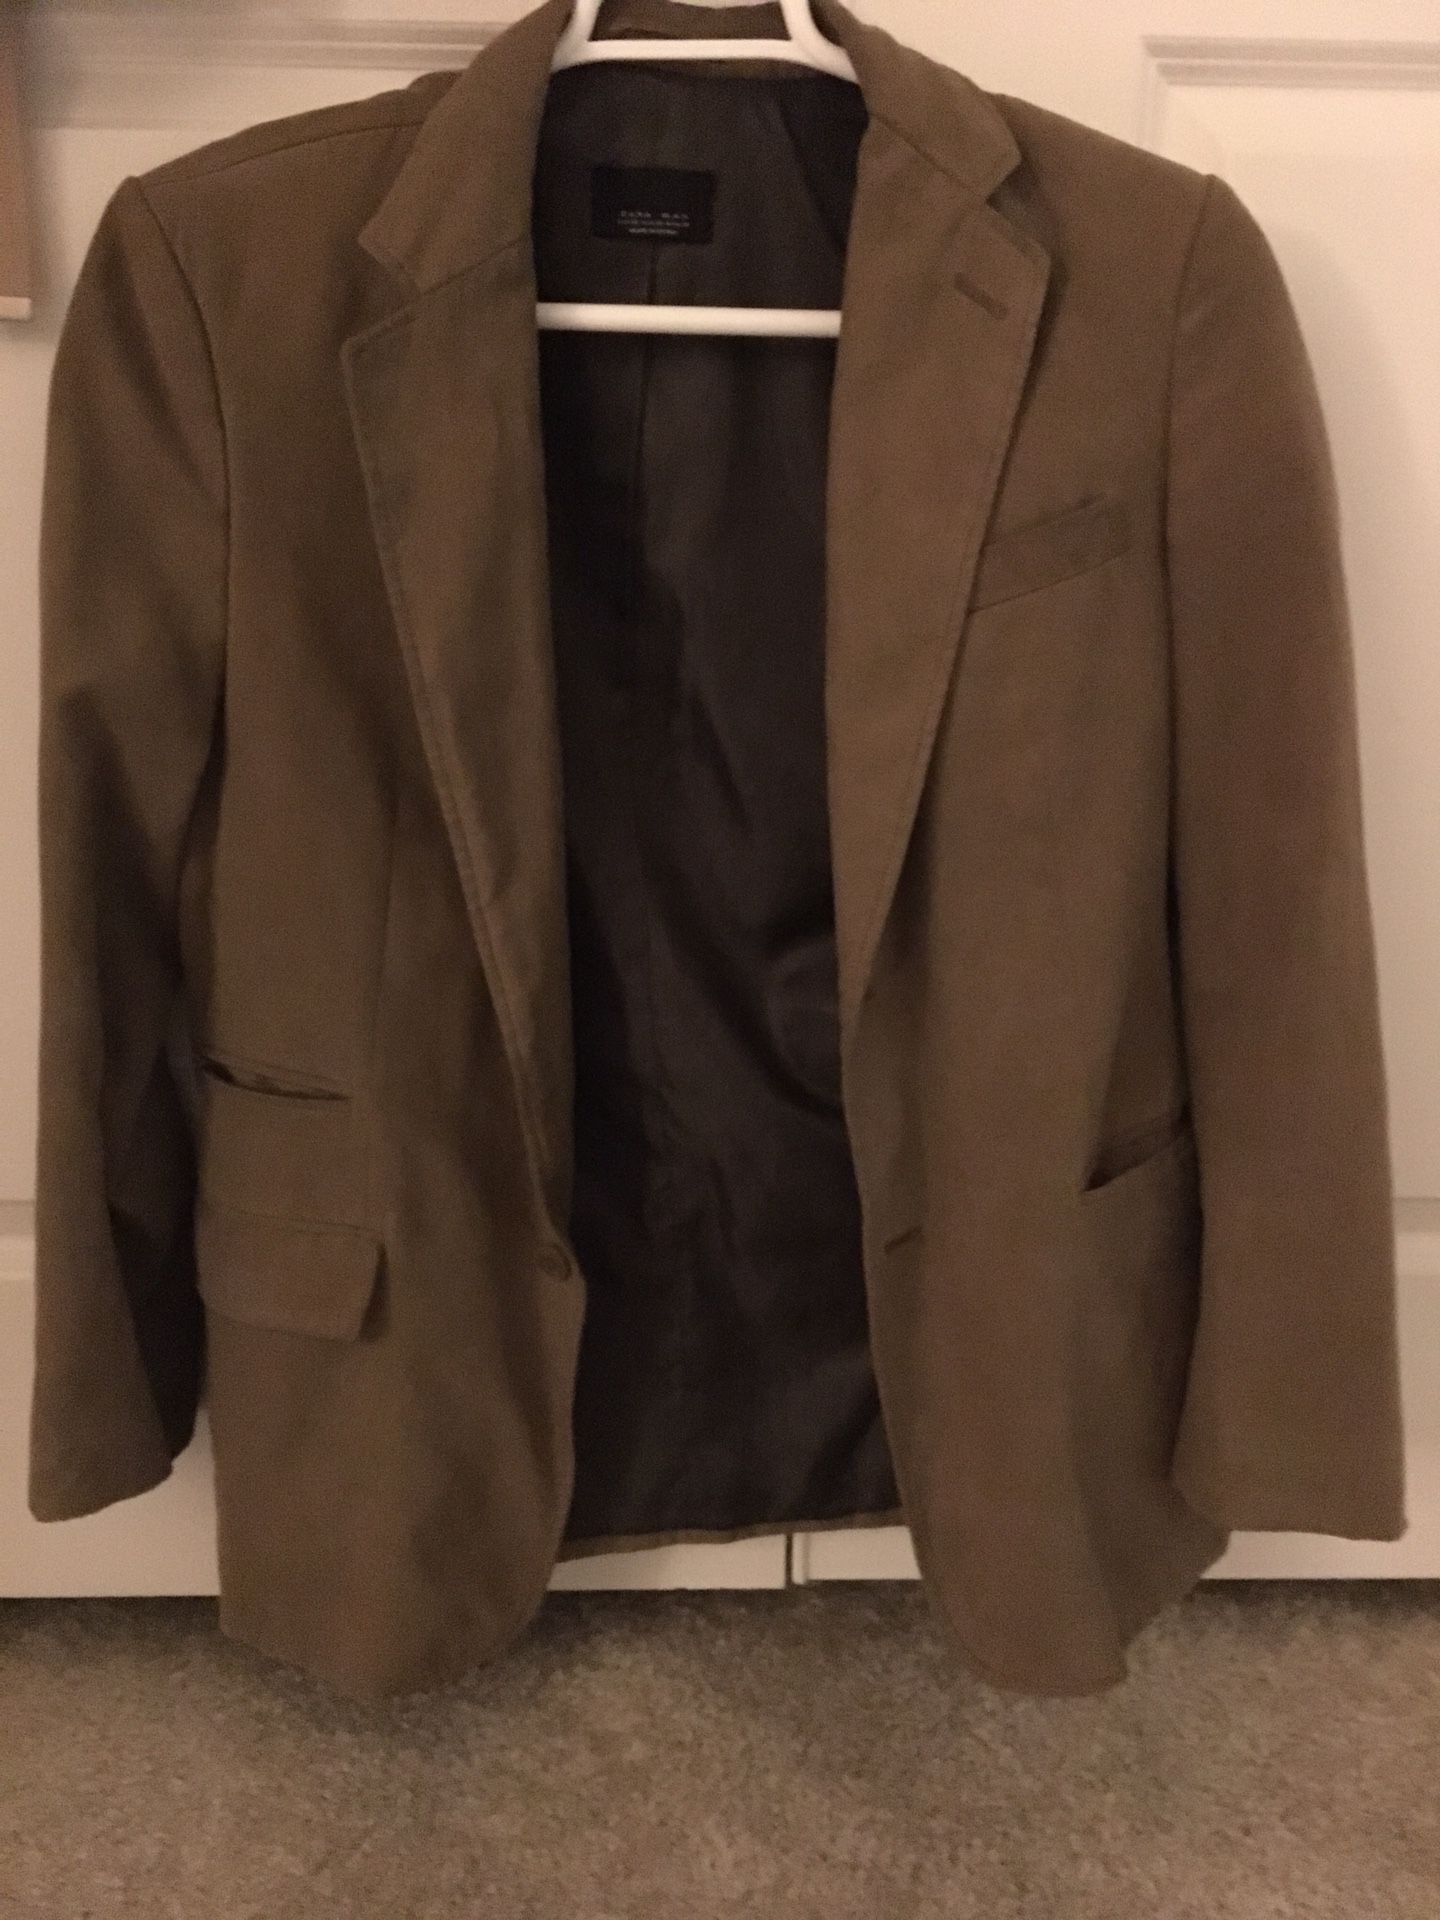 Zara men’s suit jacket